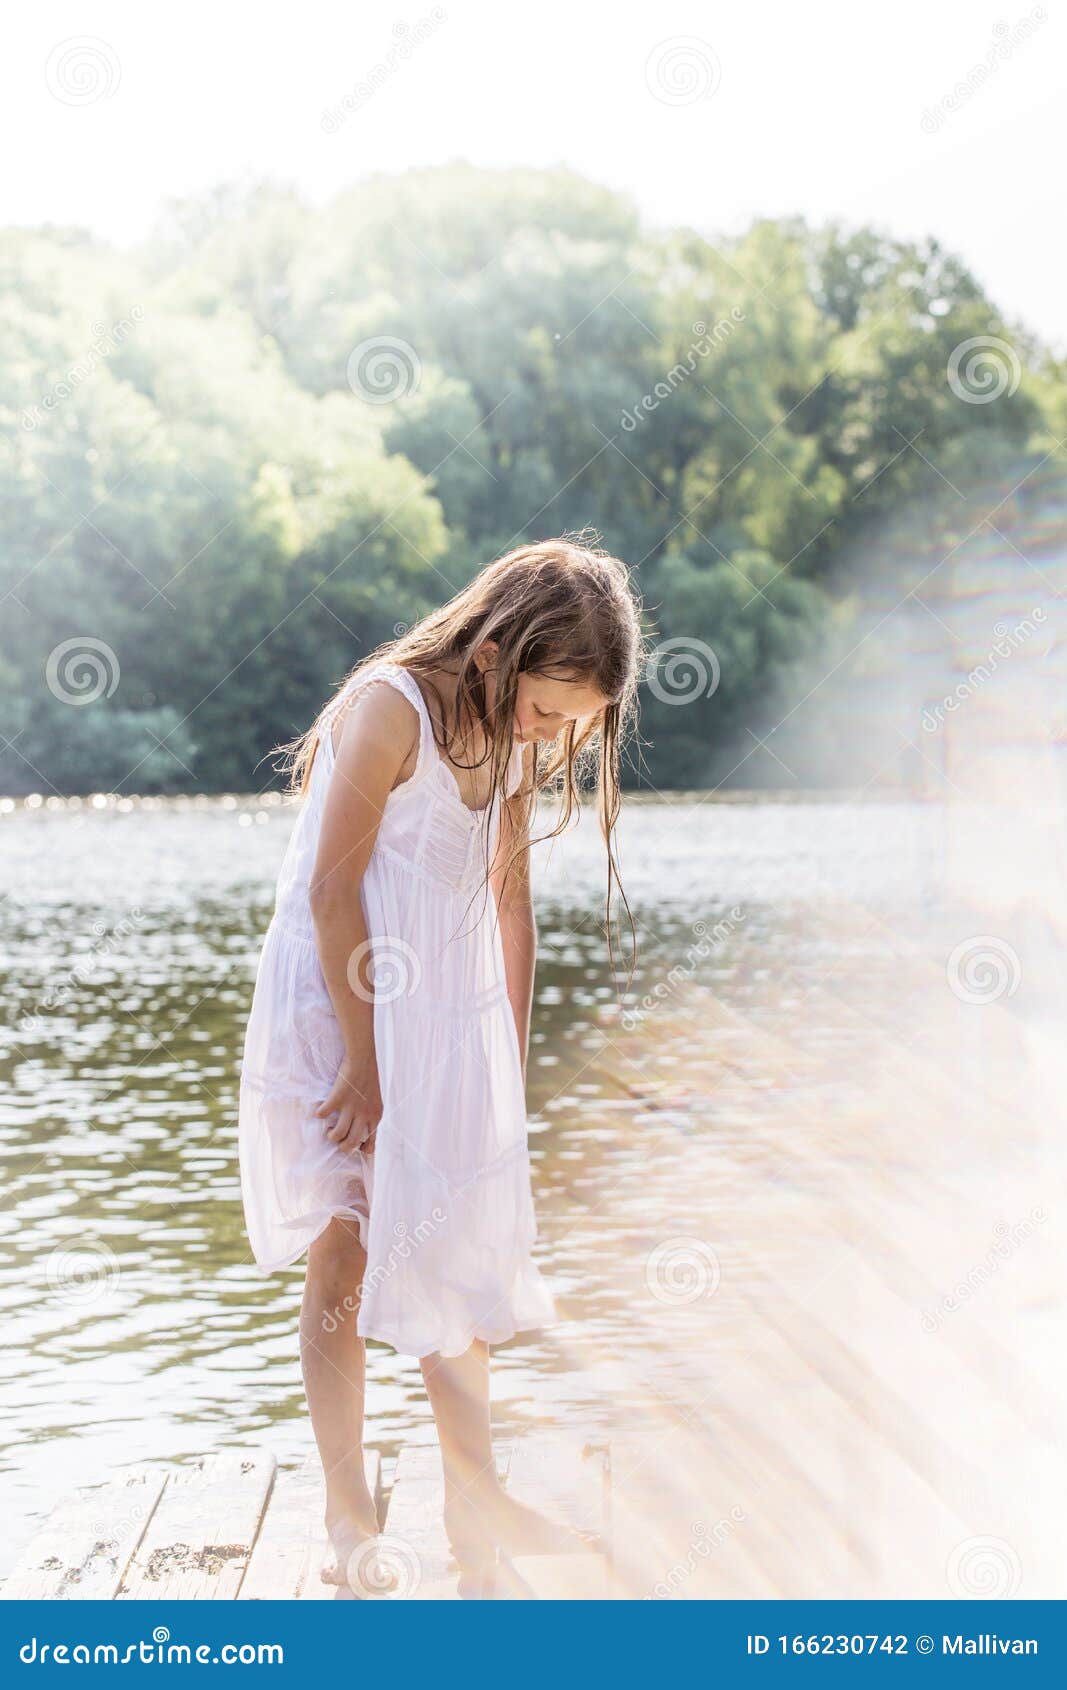 Girl in wet dress